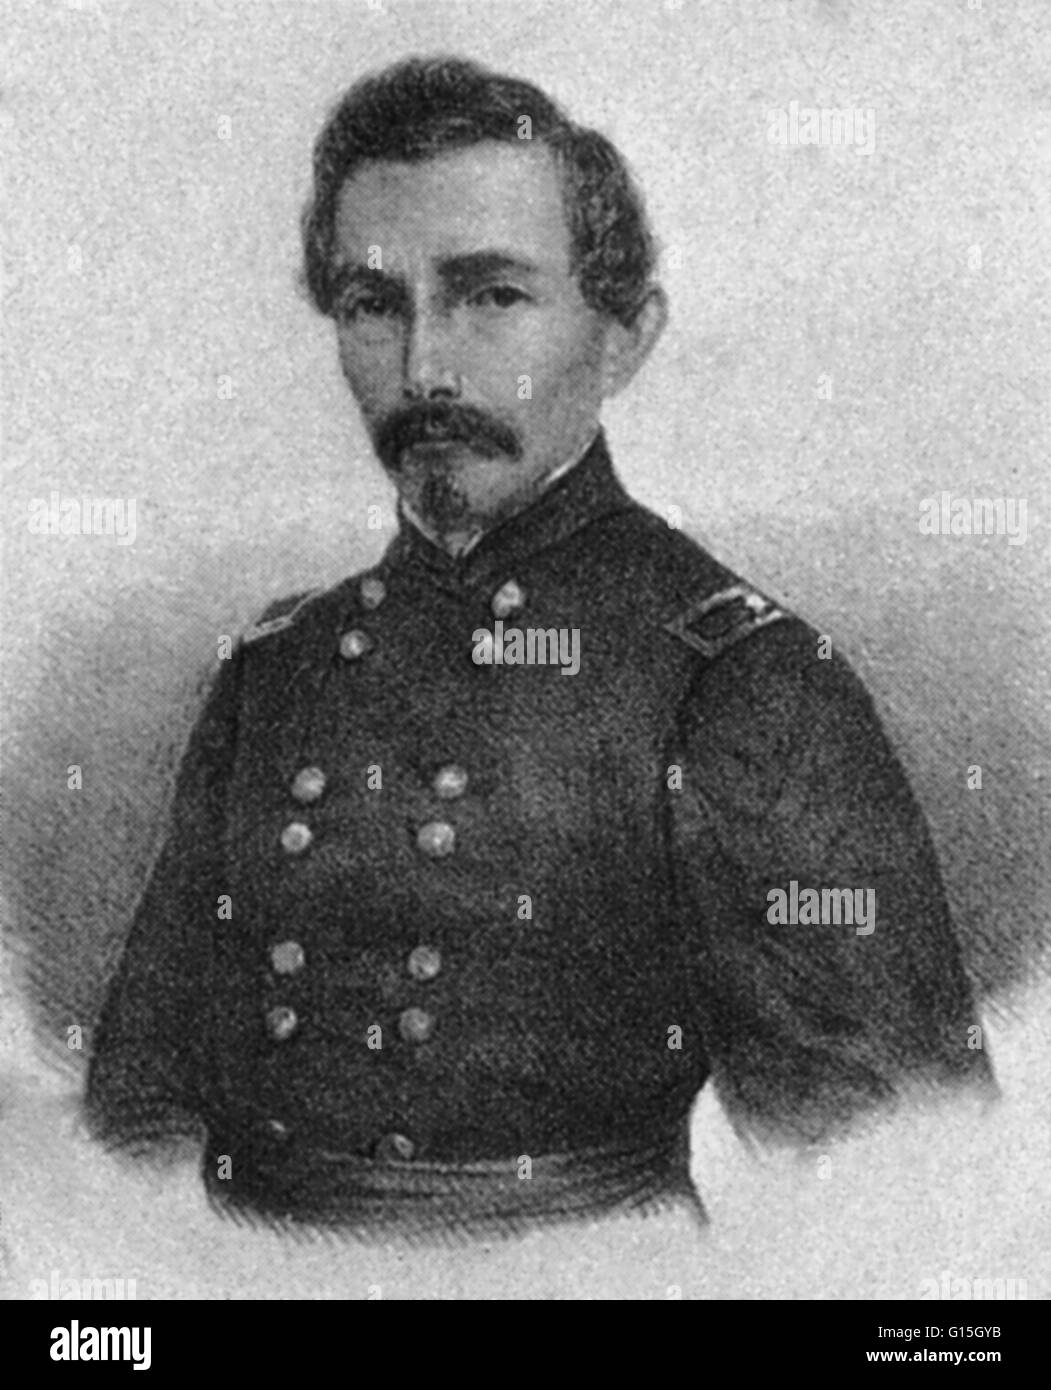 Pierre Gustave Toutant Beauregard (28 maggio 1818 - 20 febbraio 1893) era un Louisiana-americano nato ufficiale militare, politico, inventore, scrittore, funzionario civile e il primo generale di spicco degli Stati Confederati esercito durante la Guerra Civile Americana. Foto Stock